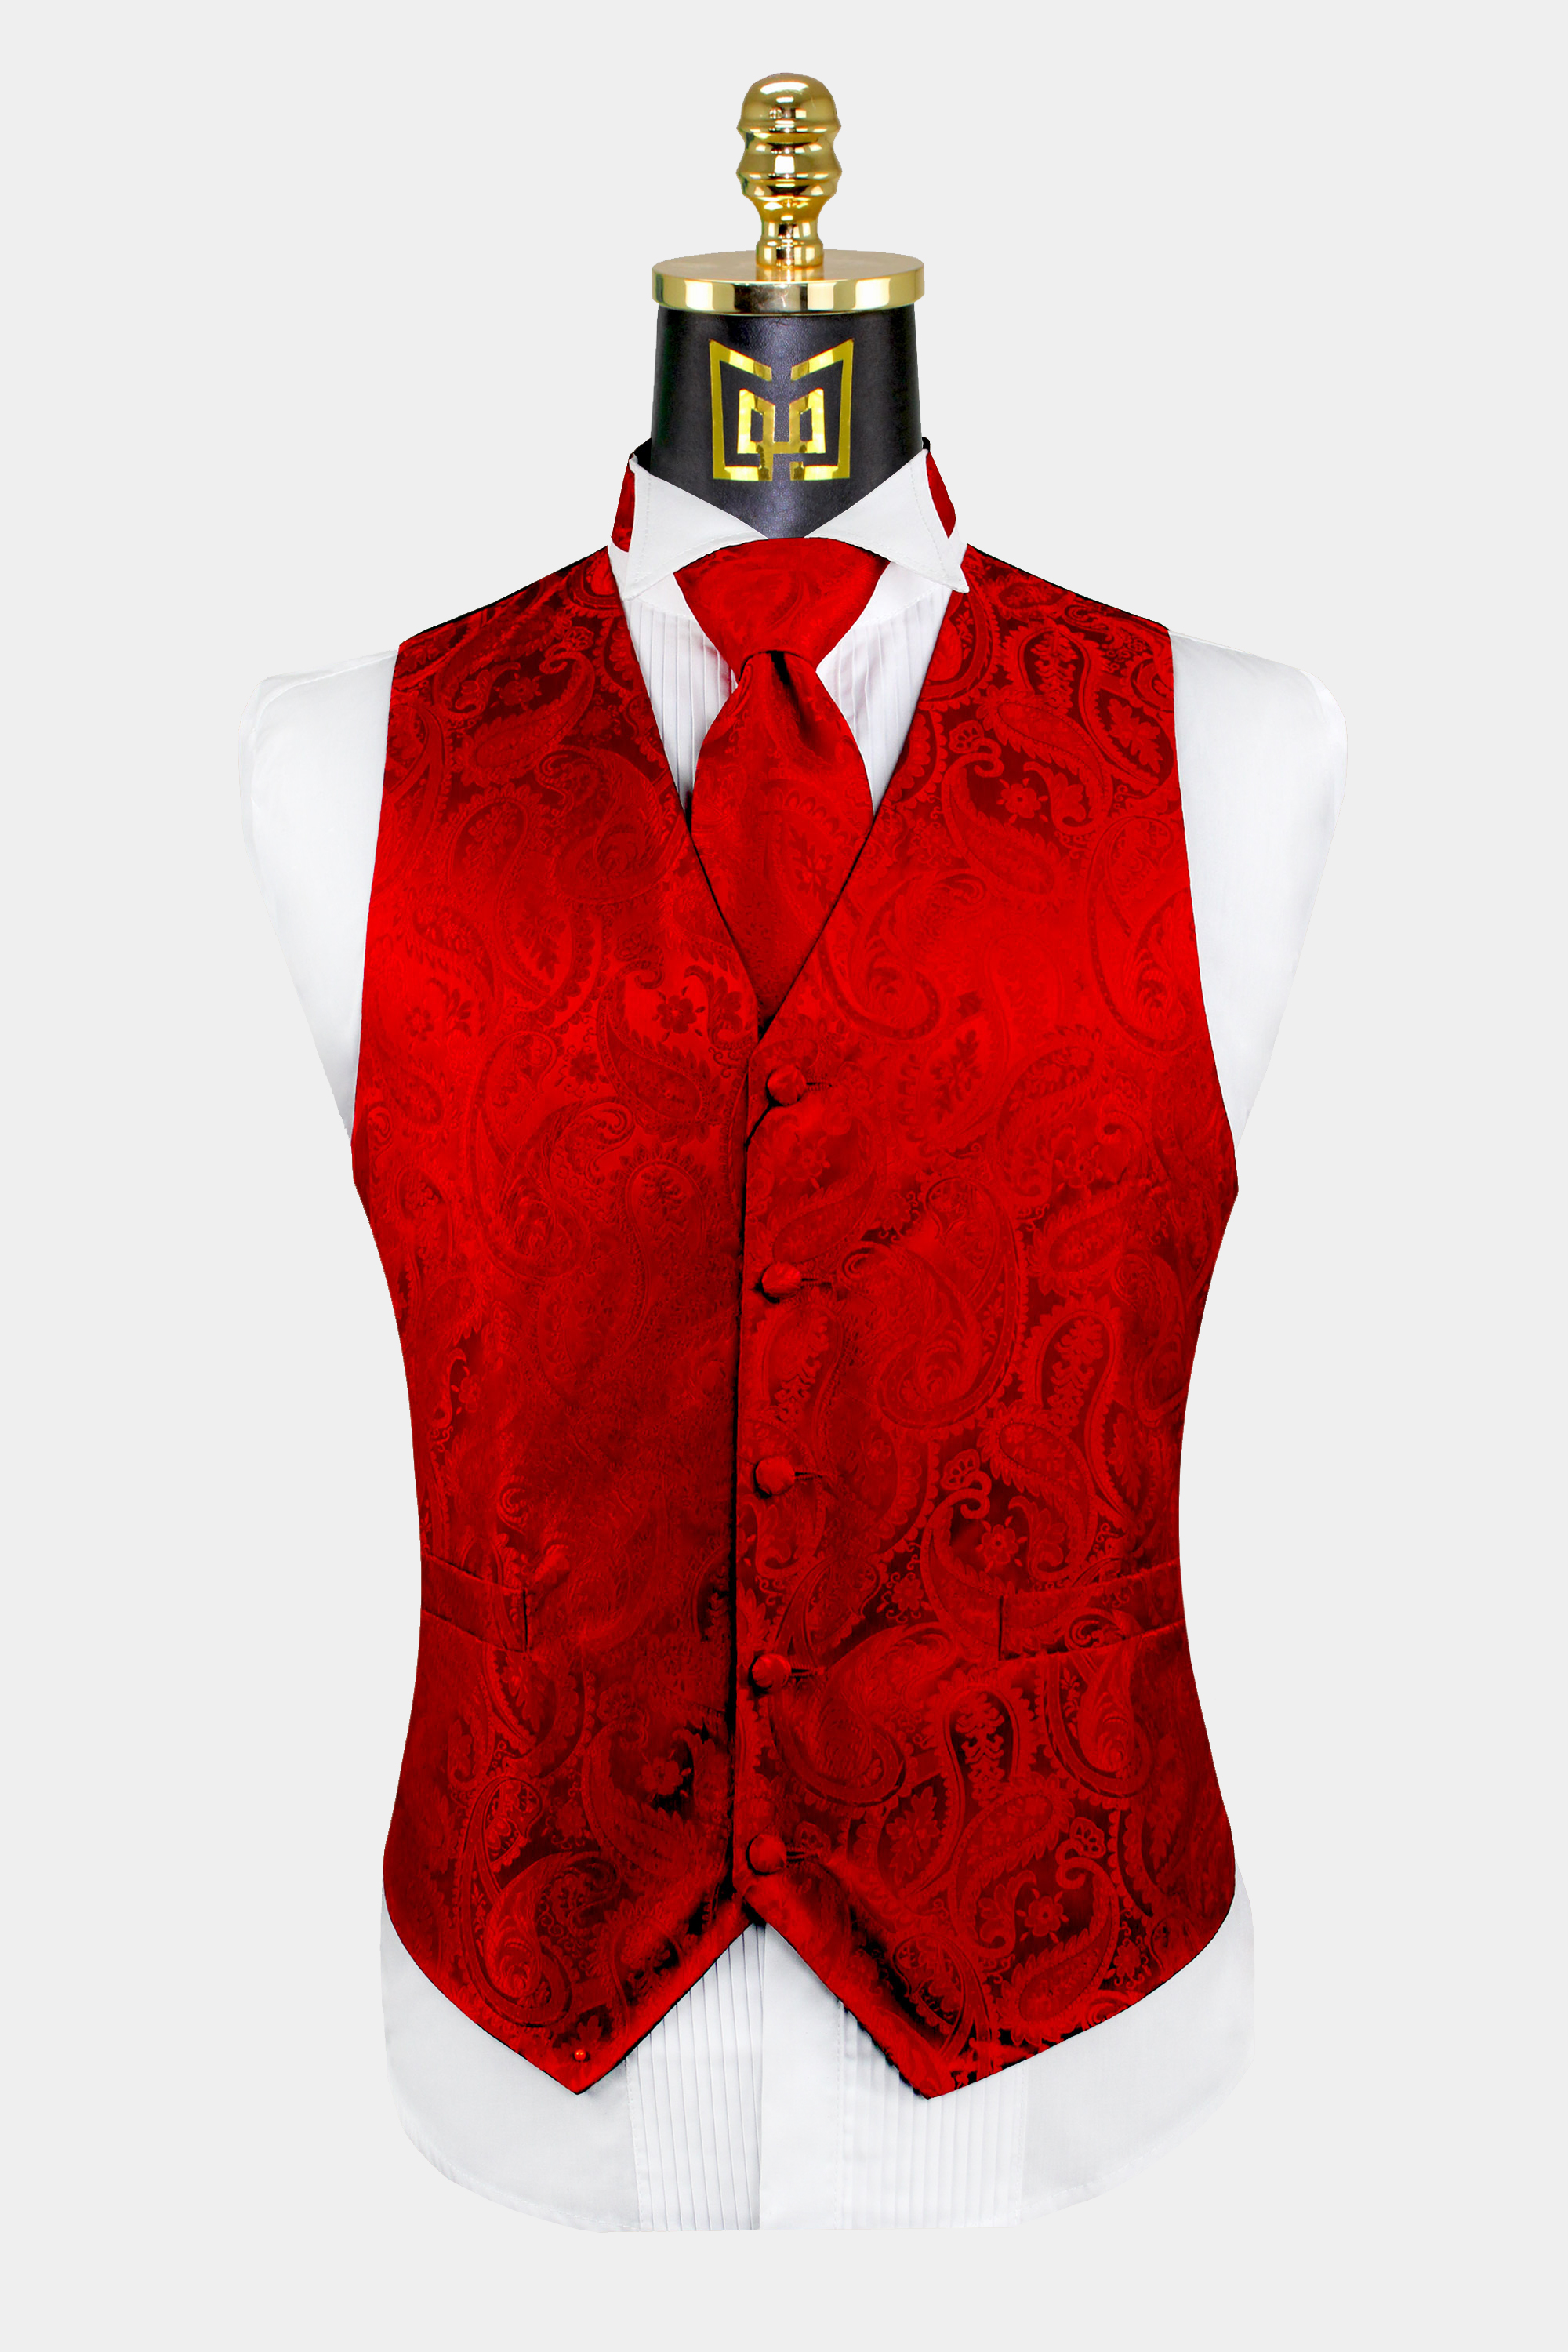 Red-Paisley-Vest-and-Tie-Set-Groom-Wedding-Tuxedo-Vest-from-Gentlemansguru.com_